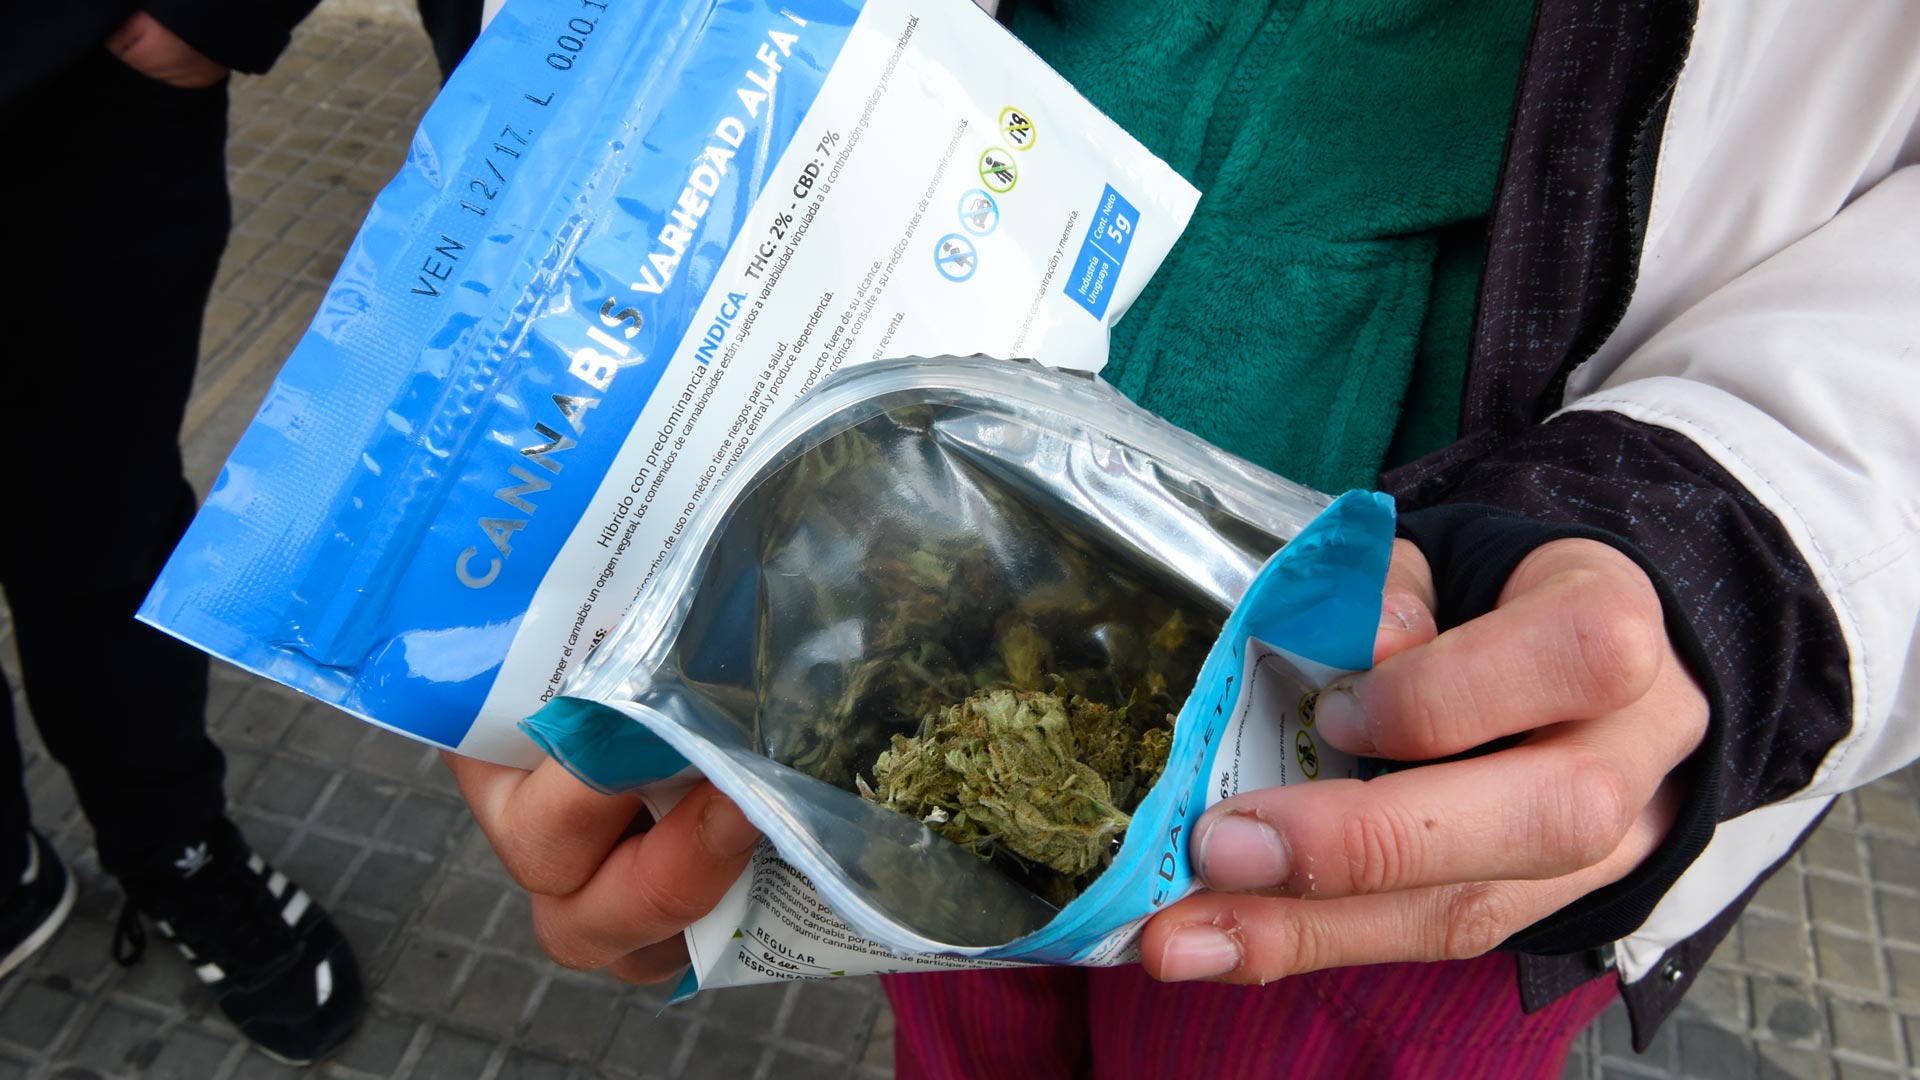 Se agota la marihuana en las farmacias de Montevideo en el primer día de venta legal 2